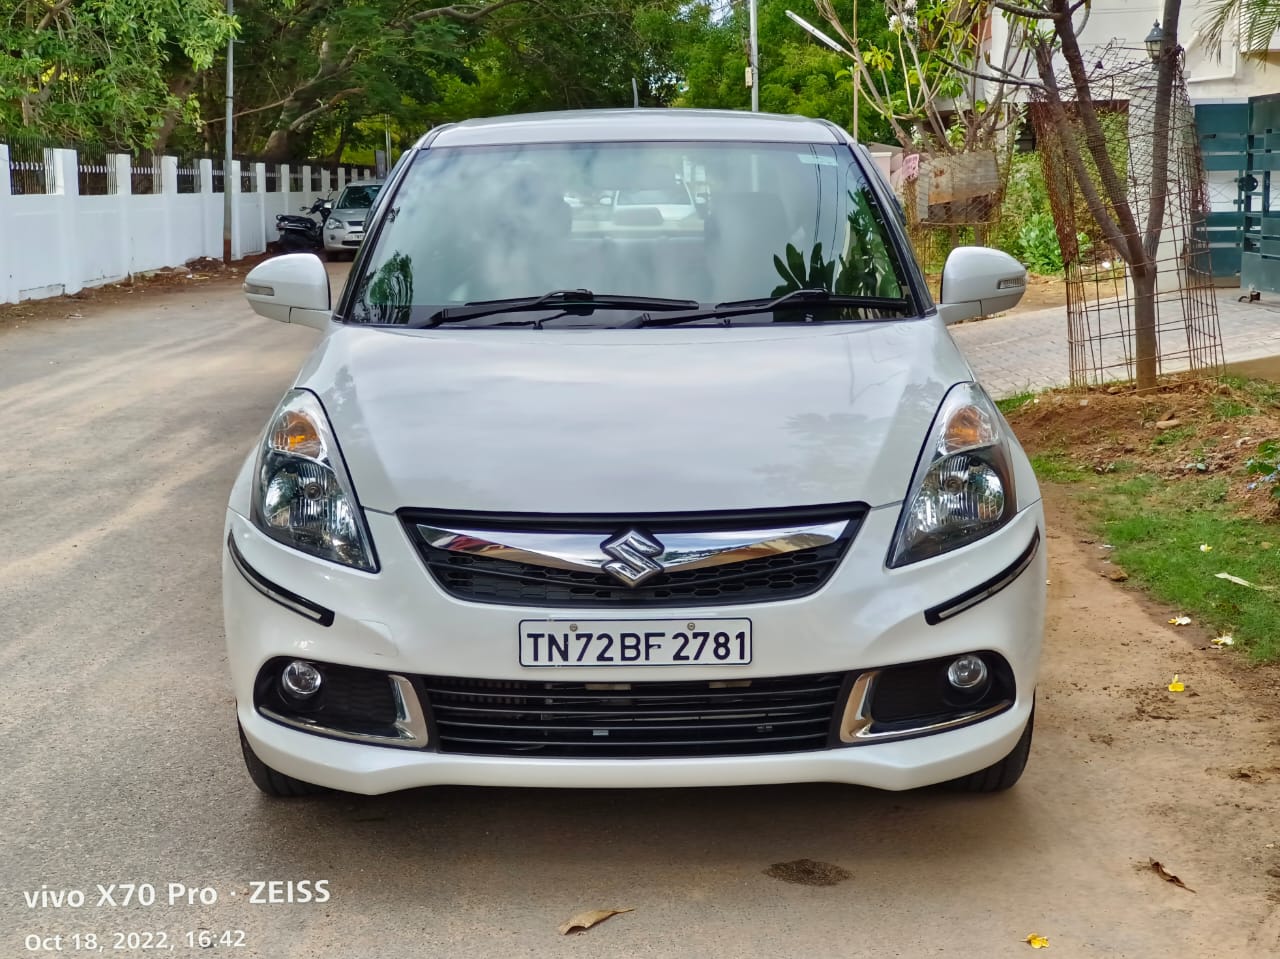 4820-for-sale-Maruthi-Suzuki-DZire-Diesel-First-Owner-2017-TN-registered-rs-0